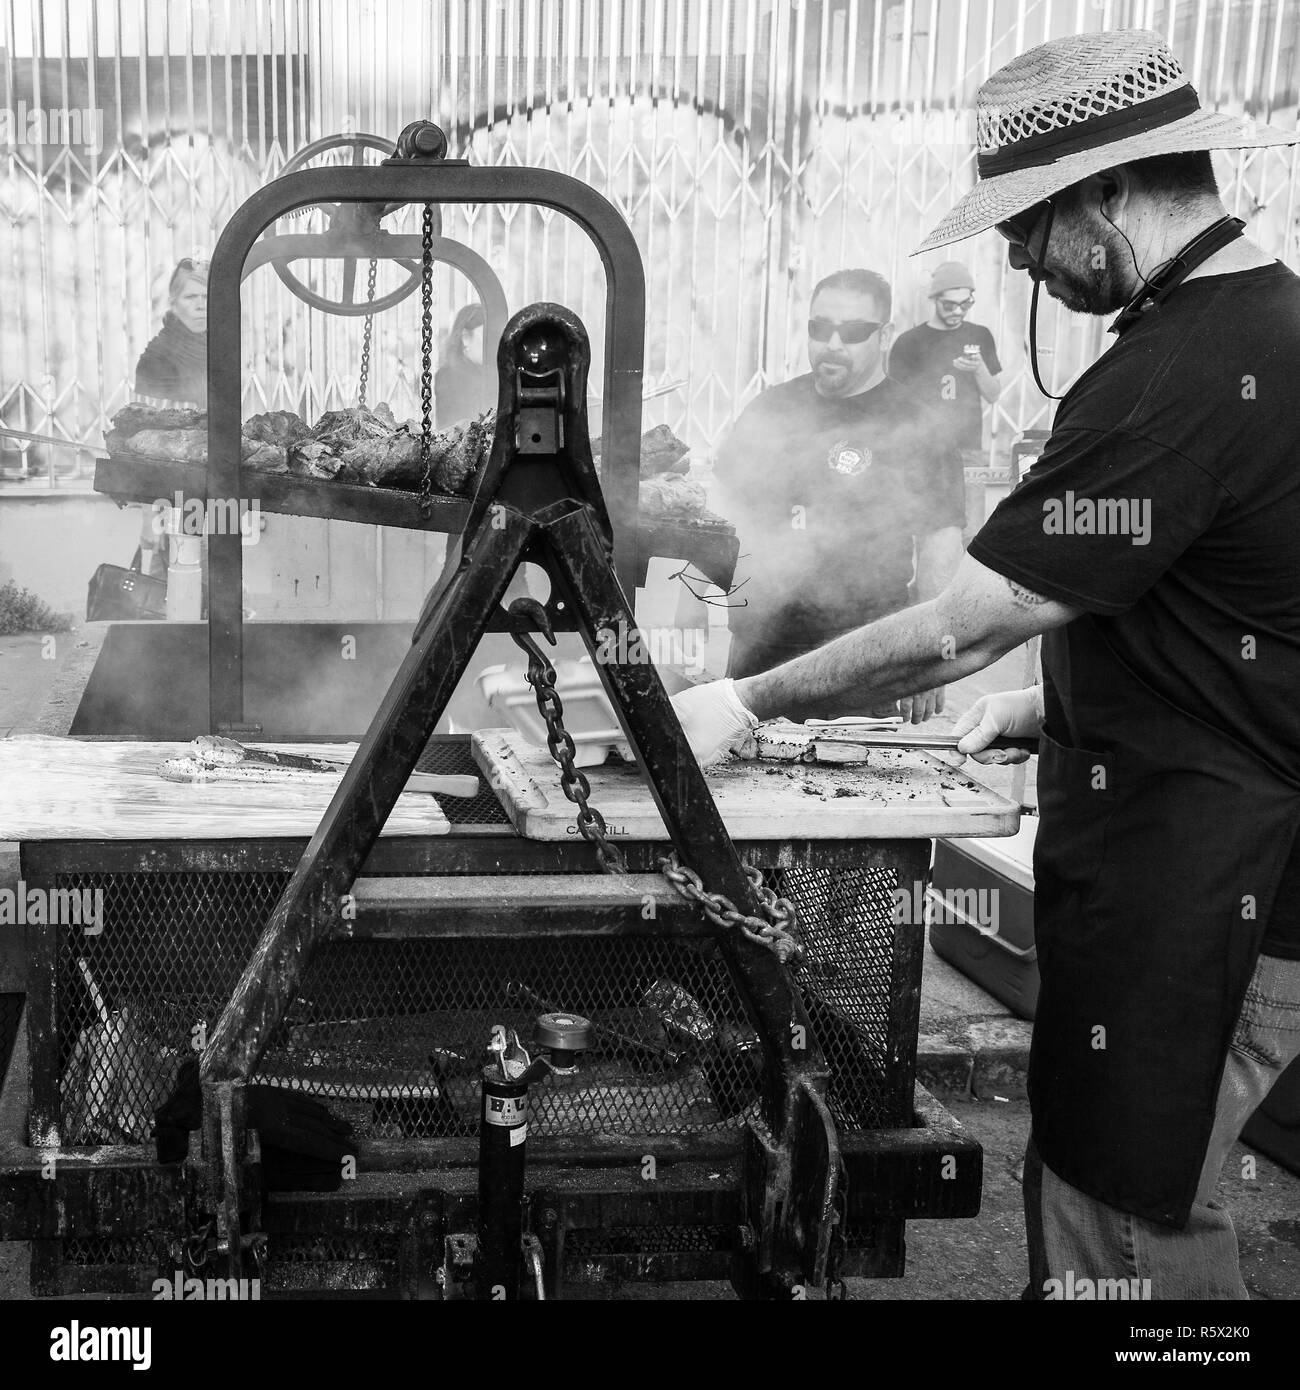 OAKLAND, CA-Giugno 6, 2014: Street chef in arte mormorio cuochi il barbecue su una forza industriale grill. Il grintoso urbano. In bianco e nero di formato quadrato. Foto Stock